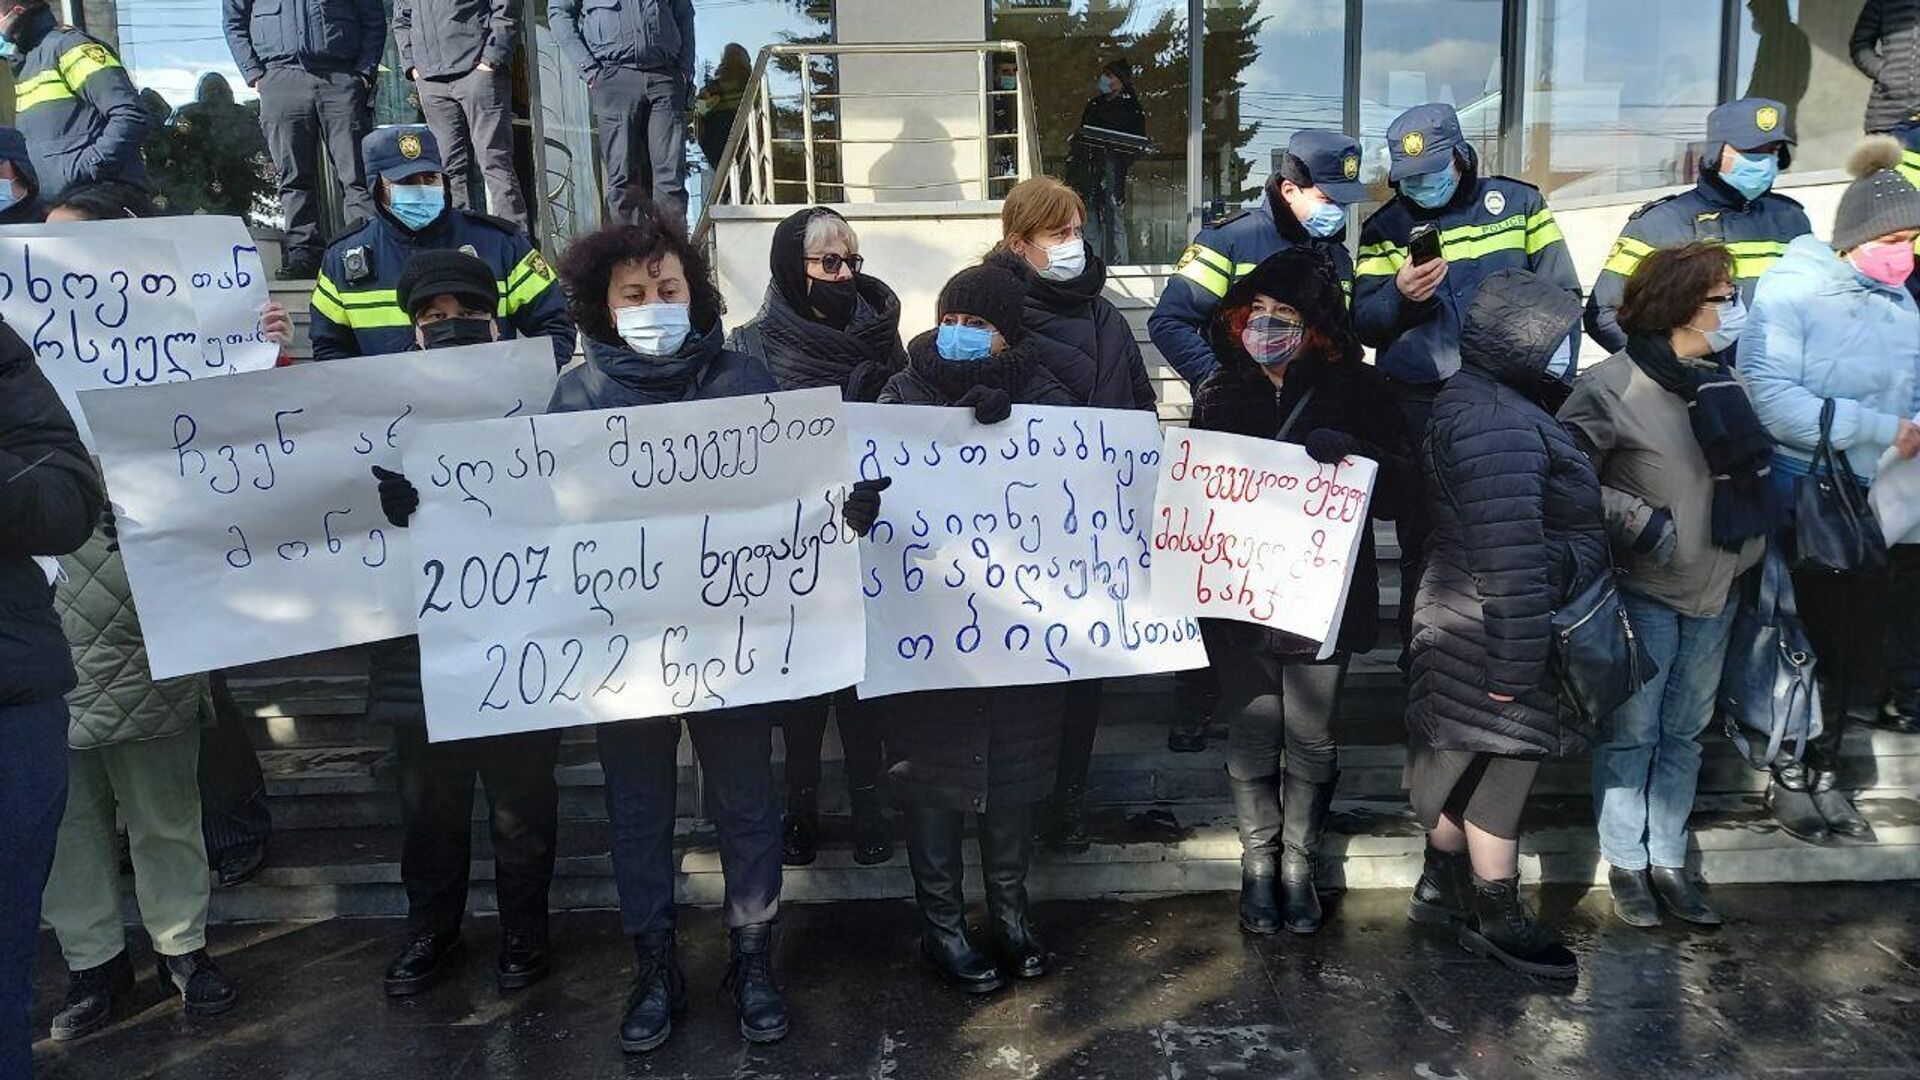 Работники Агентства социального обслуживания объявили забастовку у здания минздрава Грузии, 17 января 2022 года - Sputnik Грузия, 1920, 17.01.2022